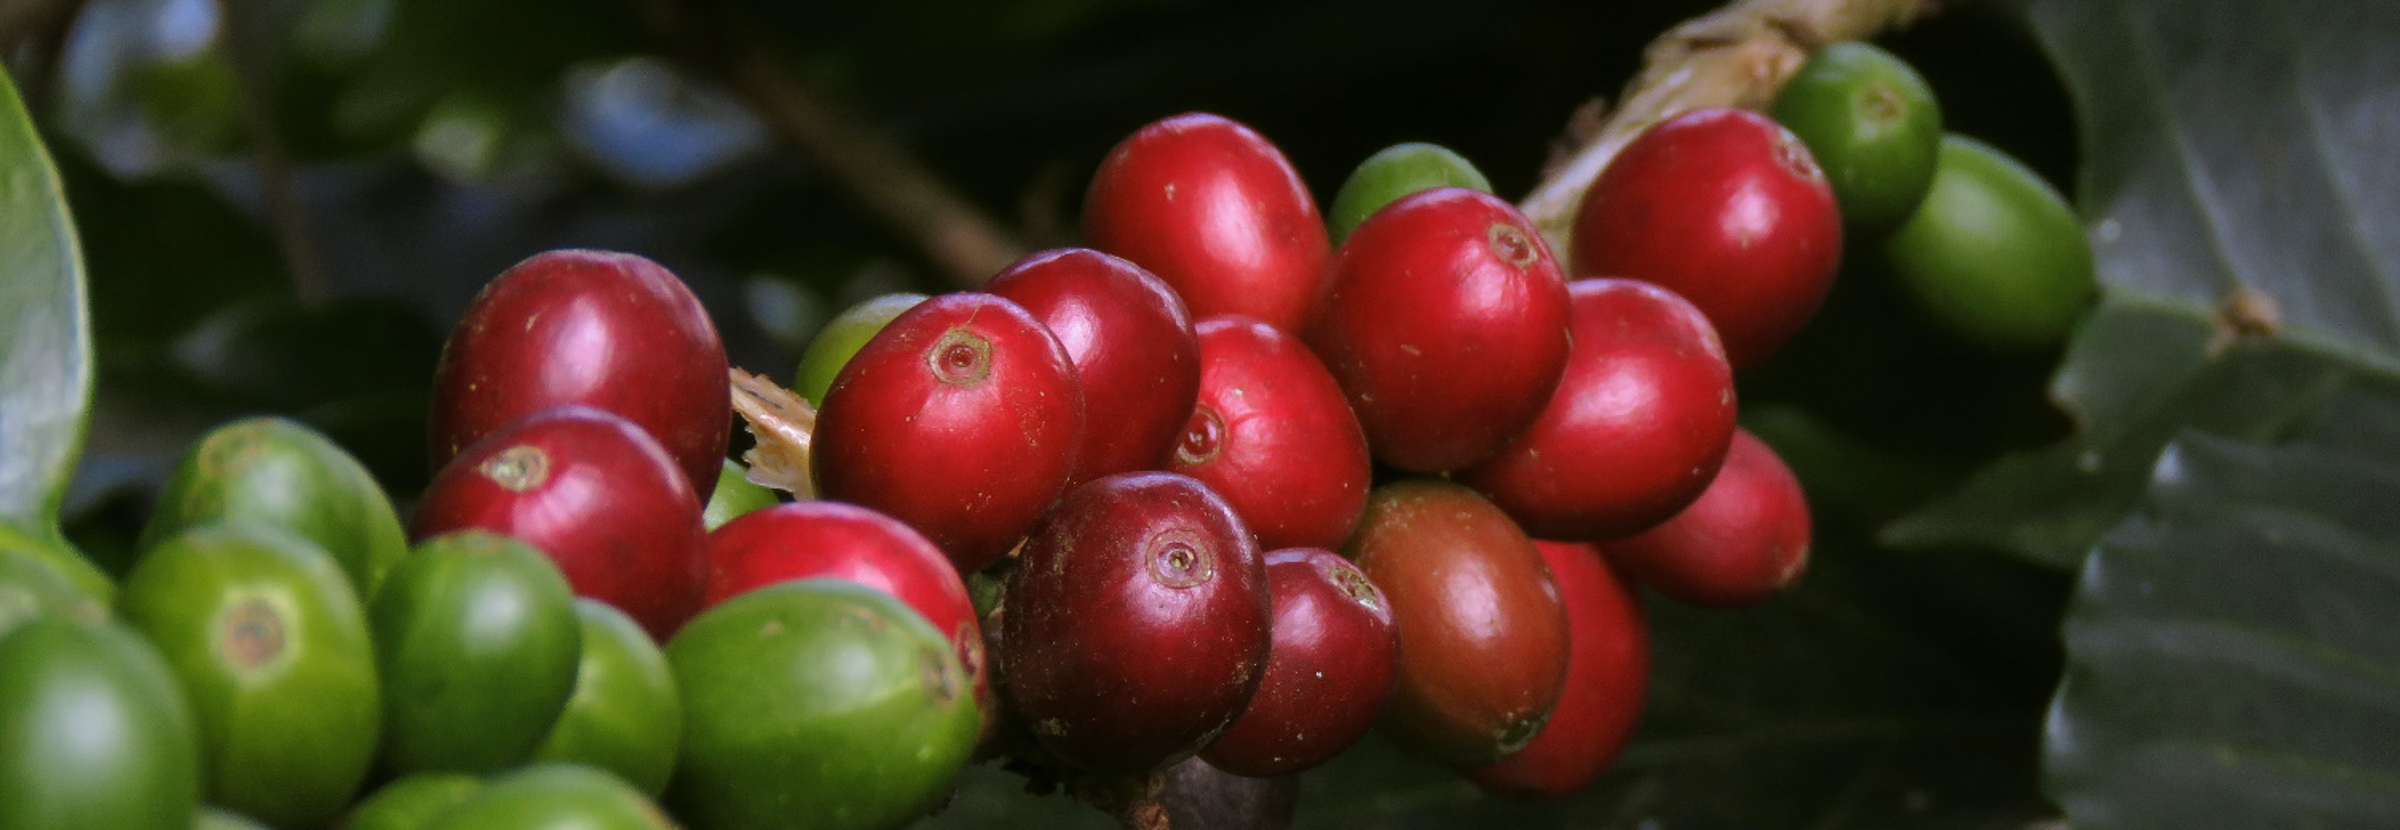 収穫の準備が整った、遺伝子組み換えされていない熟したコーヒーチェリー。